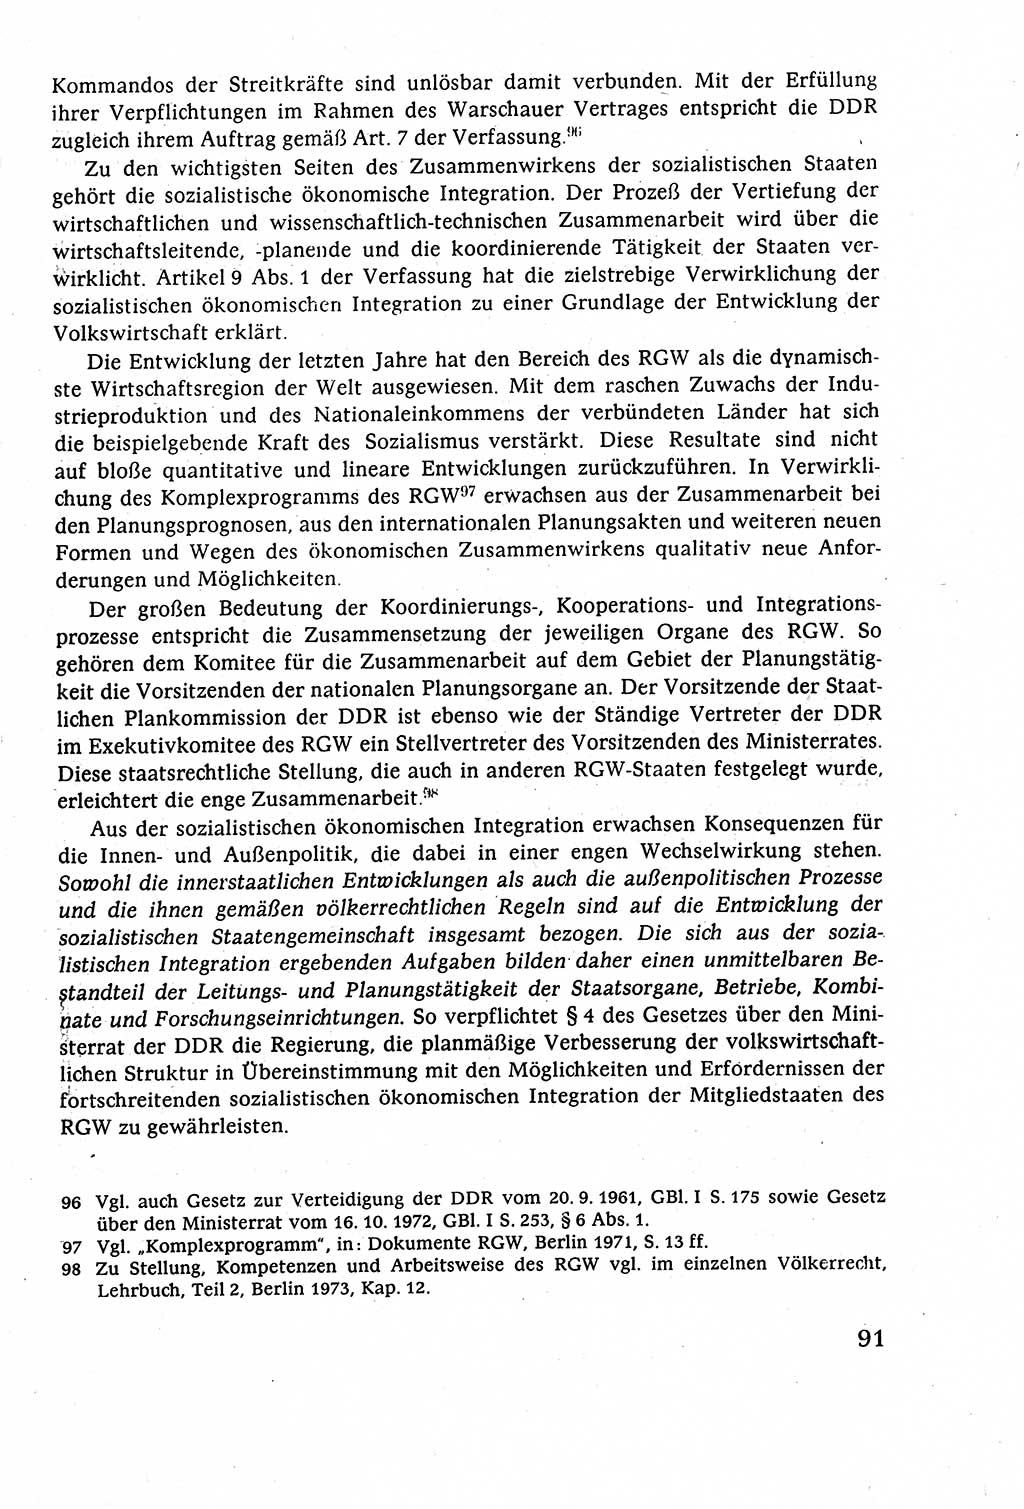 Staatsrecht der DDR (Deutsche Demokratische Republik), Lehrbuch 1977, Seite 91 (St.-R. DDR Lb. 1977, S. 91)